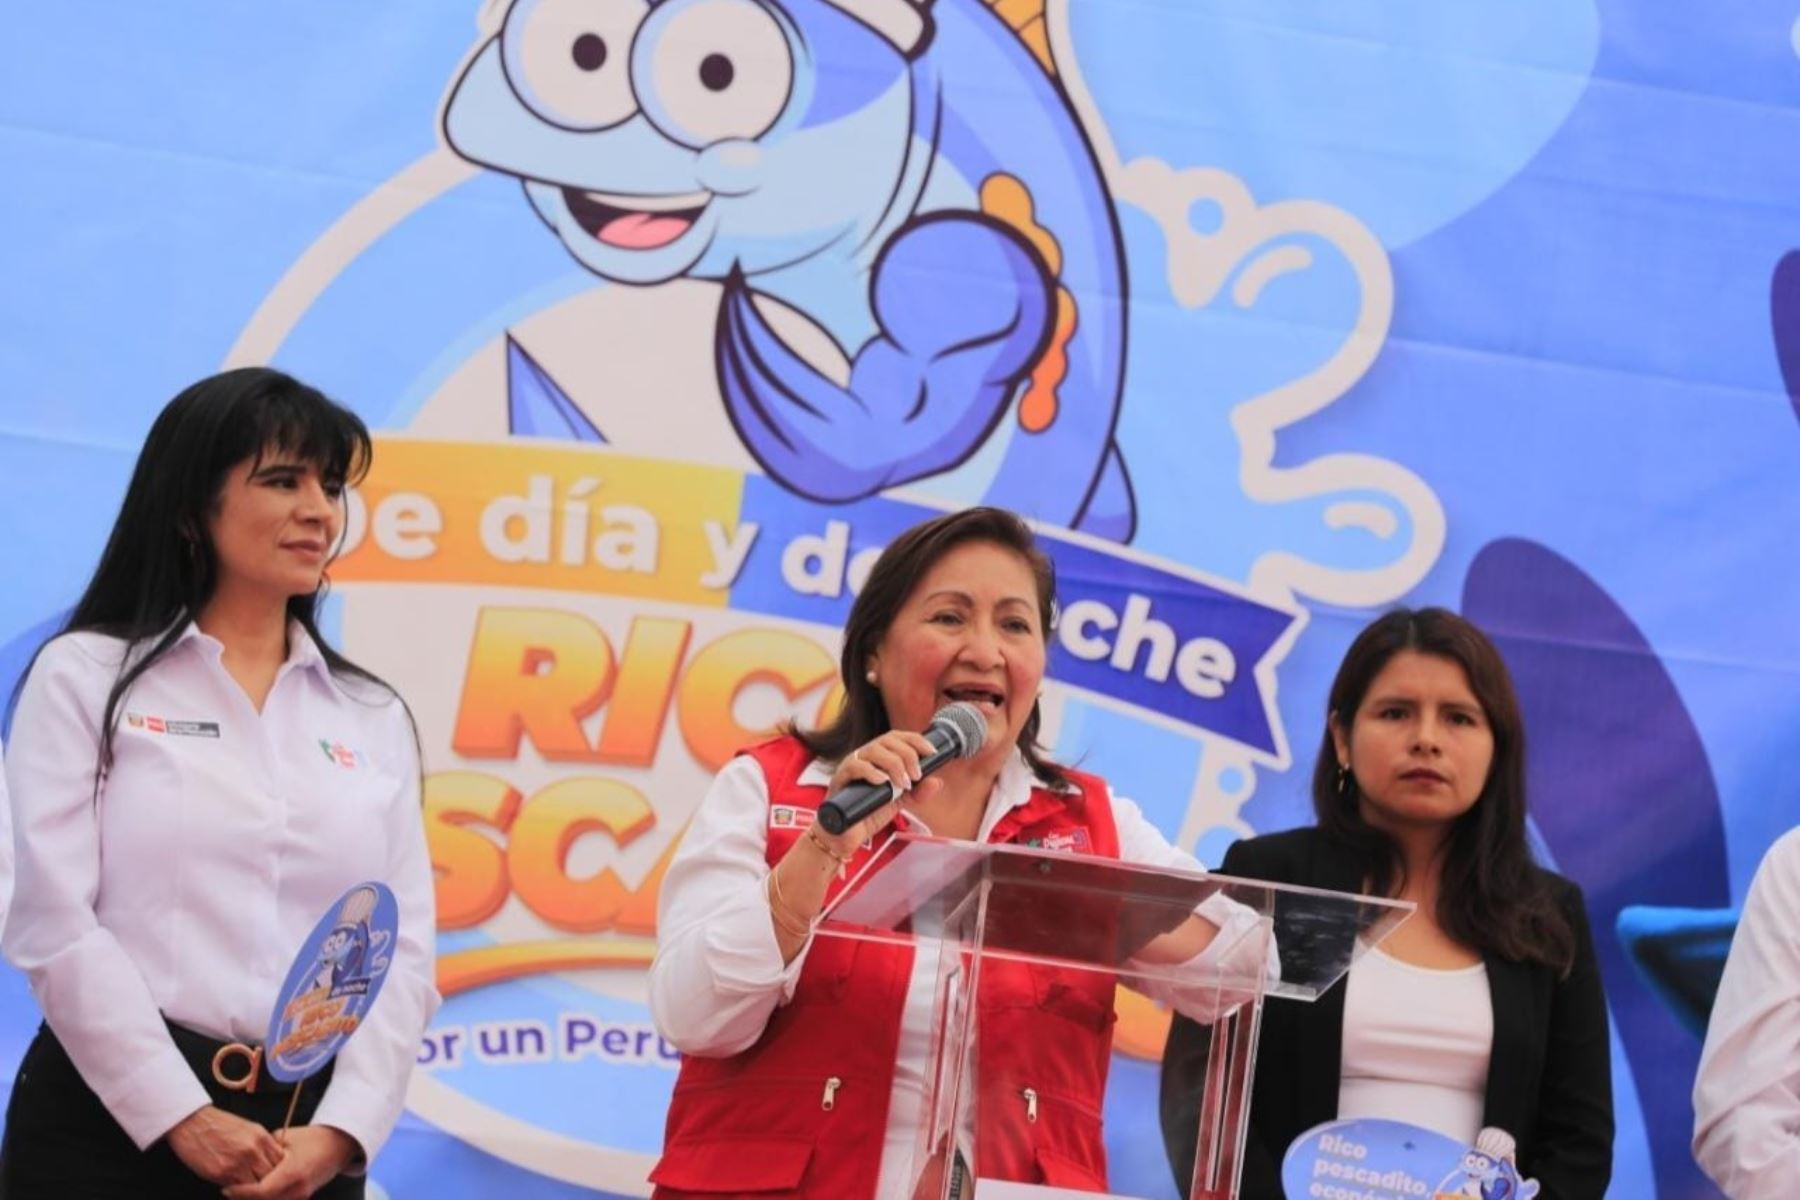 La ministra de la Producción, Ana María Choquehuanca, presentó la campaña "De día y de noche, rico pescadito". Foto: Produce/difusión.